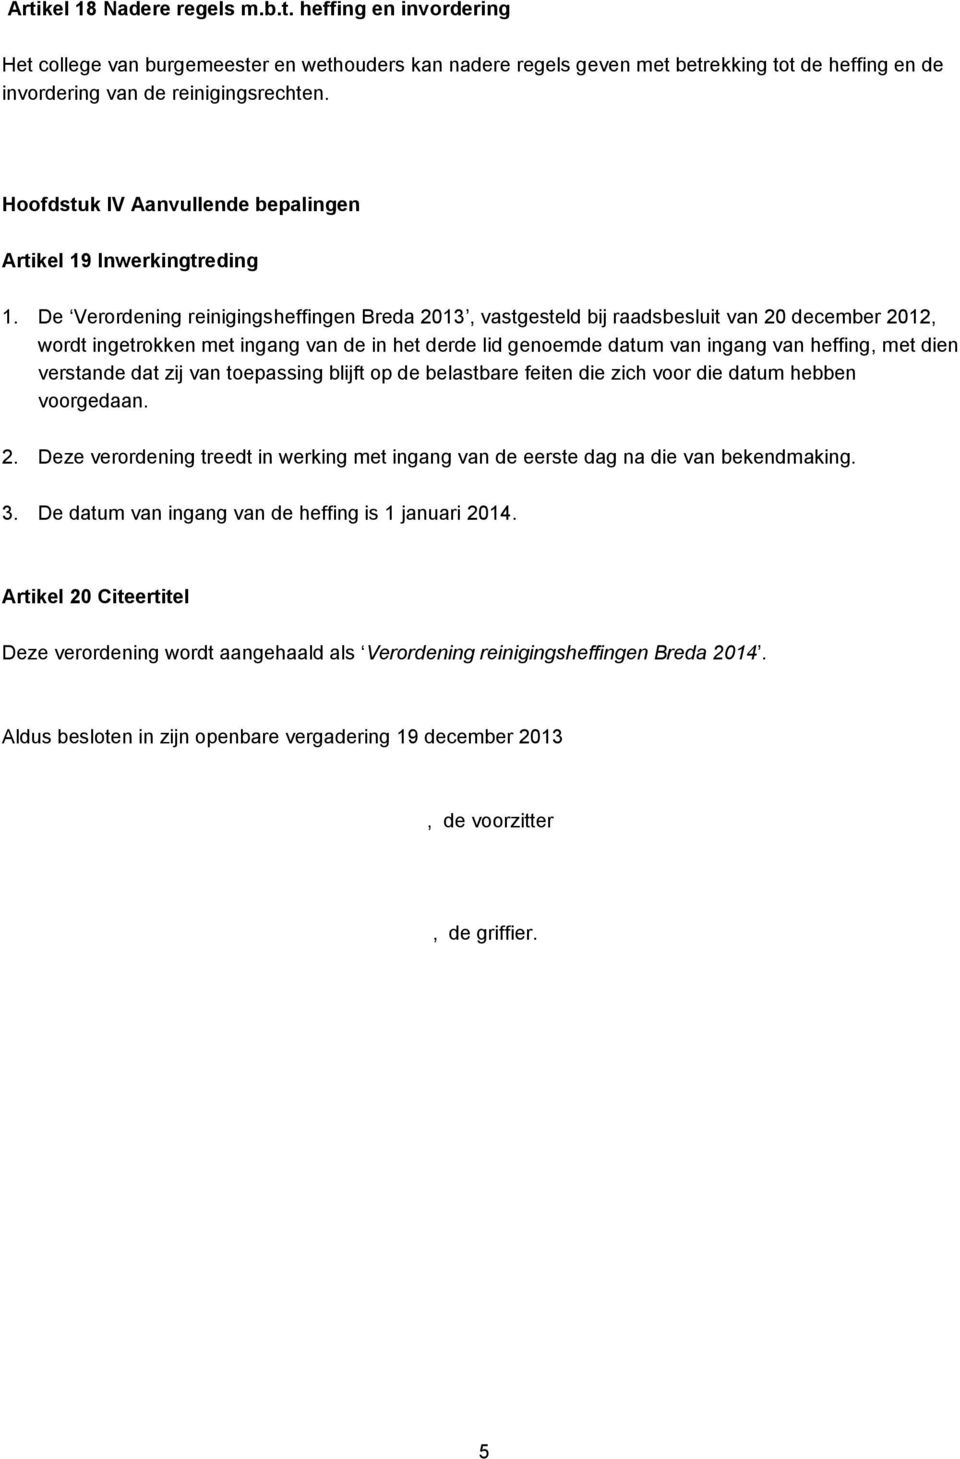 De Verordening reinigingsheffingen Breda 2013, vastgesteld bij raadsbesluit van 20 december 2012, wordt ingetrokken met ingang van de in het derde lid genoemde datum van ingang van heffing, met dien